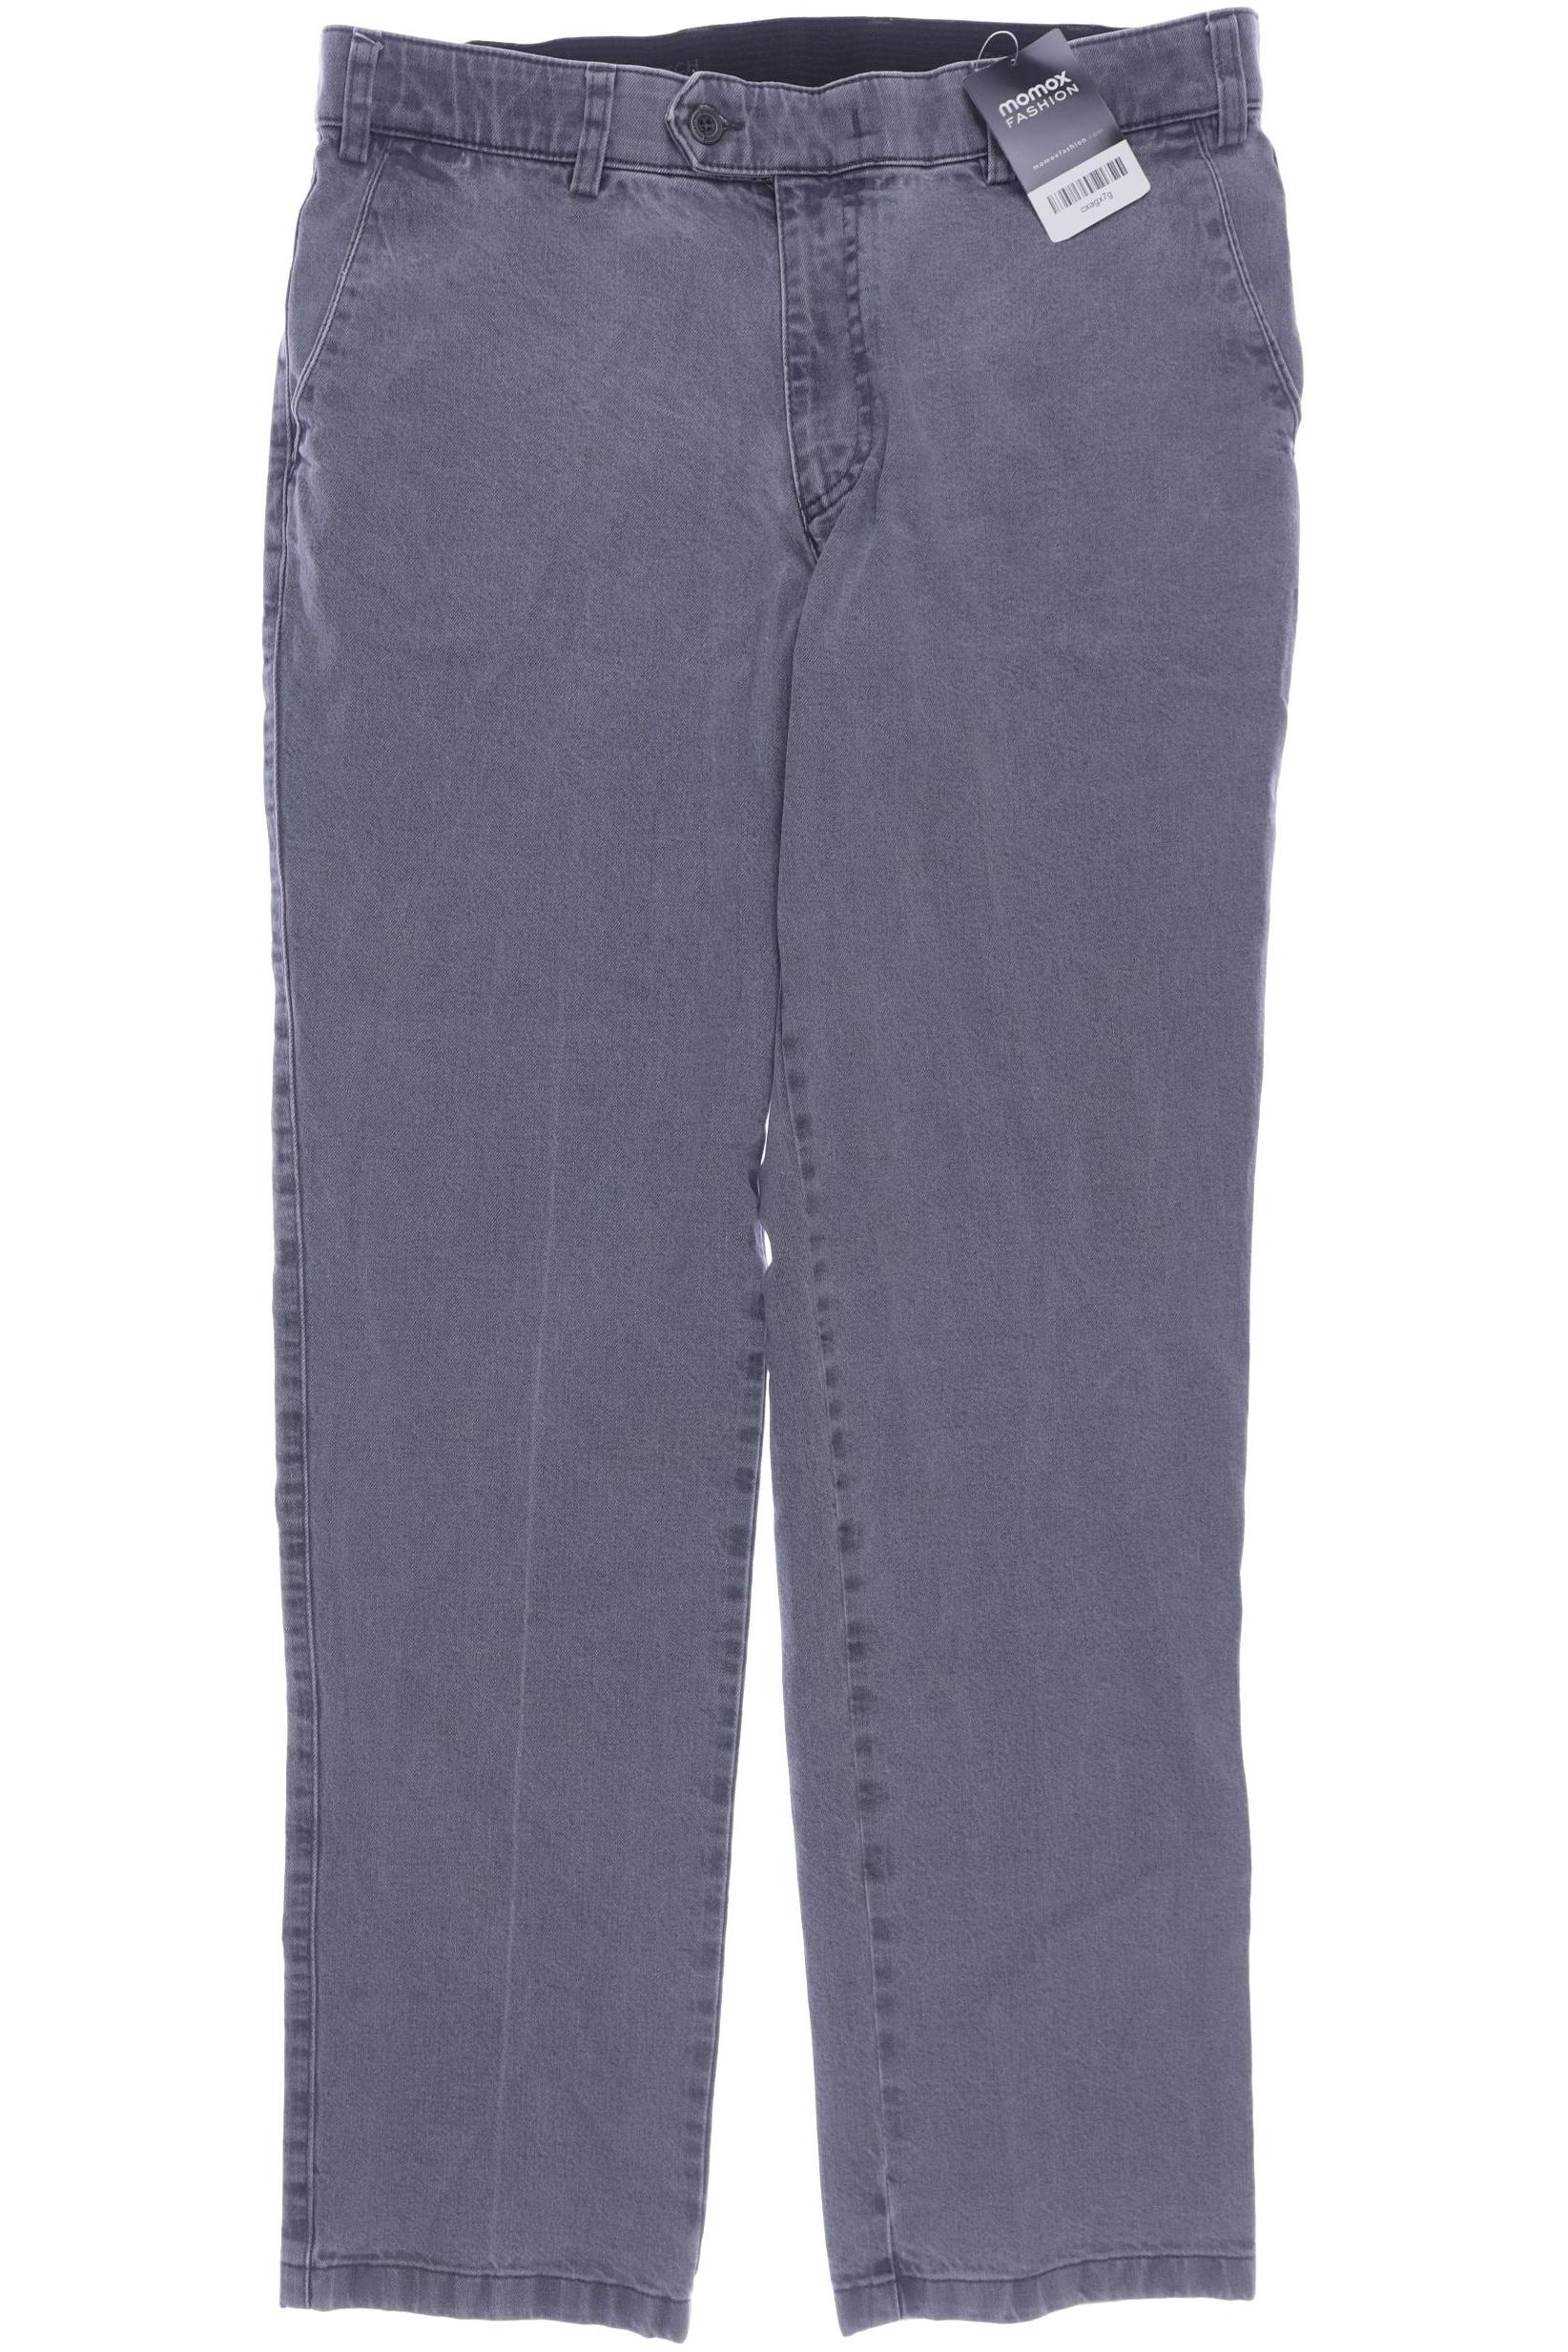 Bexleys Herren Jeans, grau, Gr. 50 von Bexleys